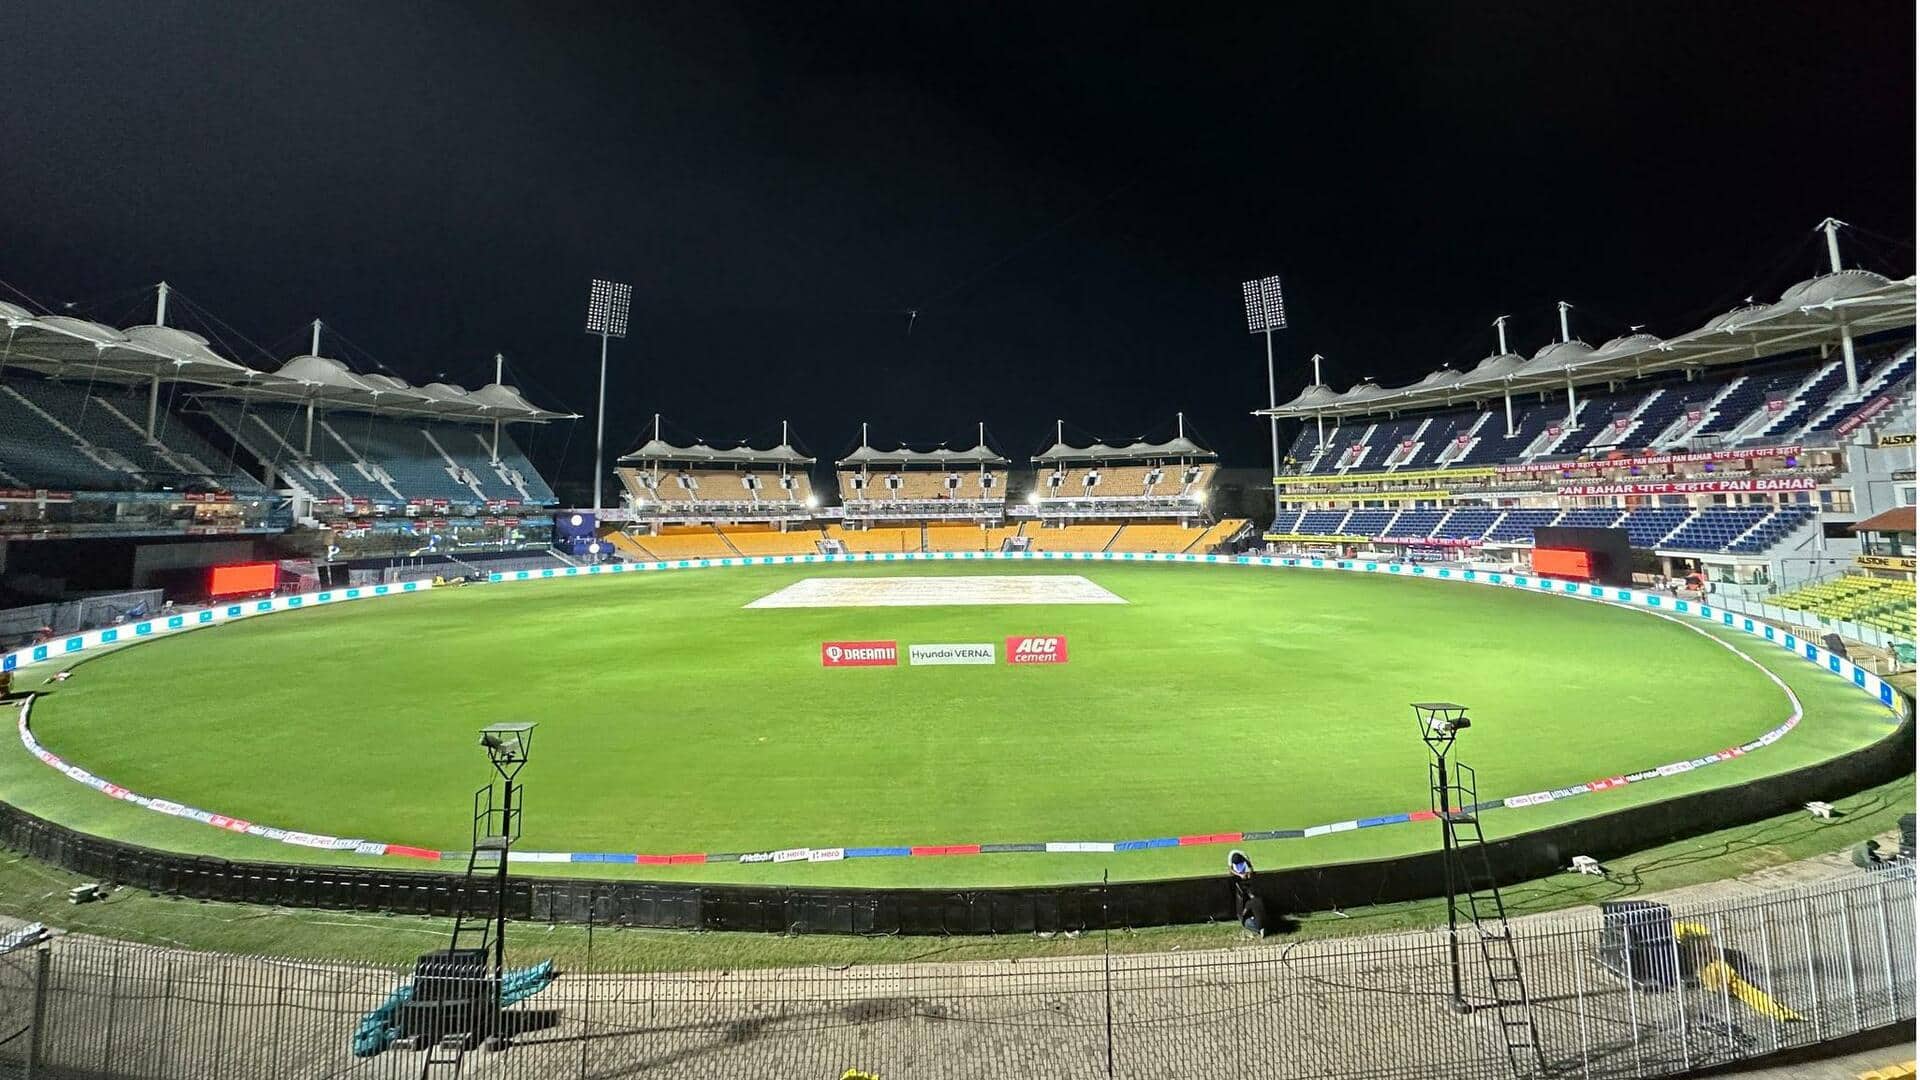 चेन्नई के चेपॉक स्टेडियम ने हासिल की बड़ी उपलब्धि, ऐसा करने वाला 5वां भारतीय मैदान